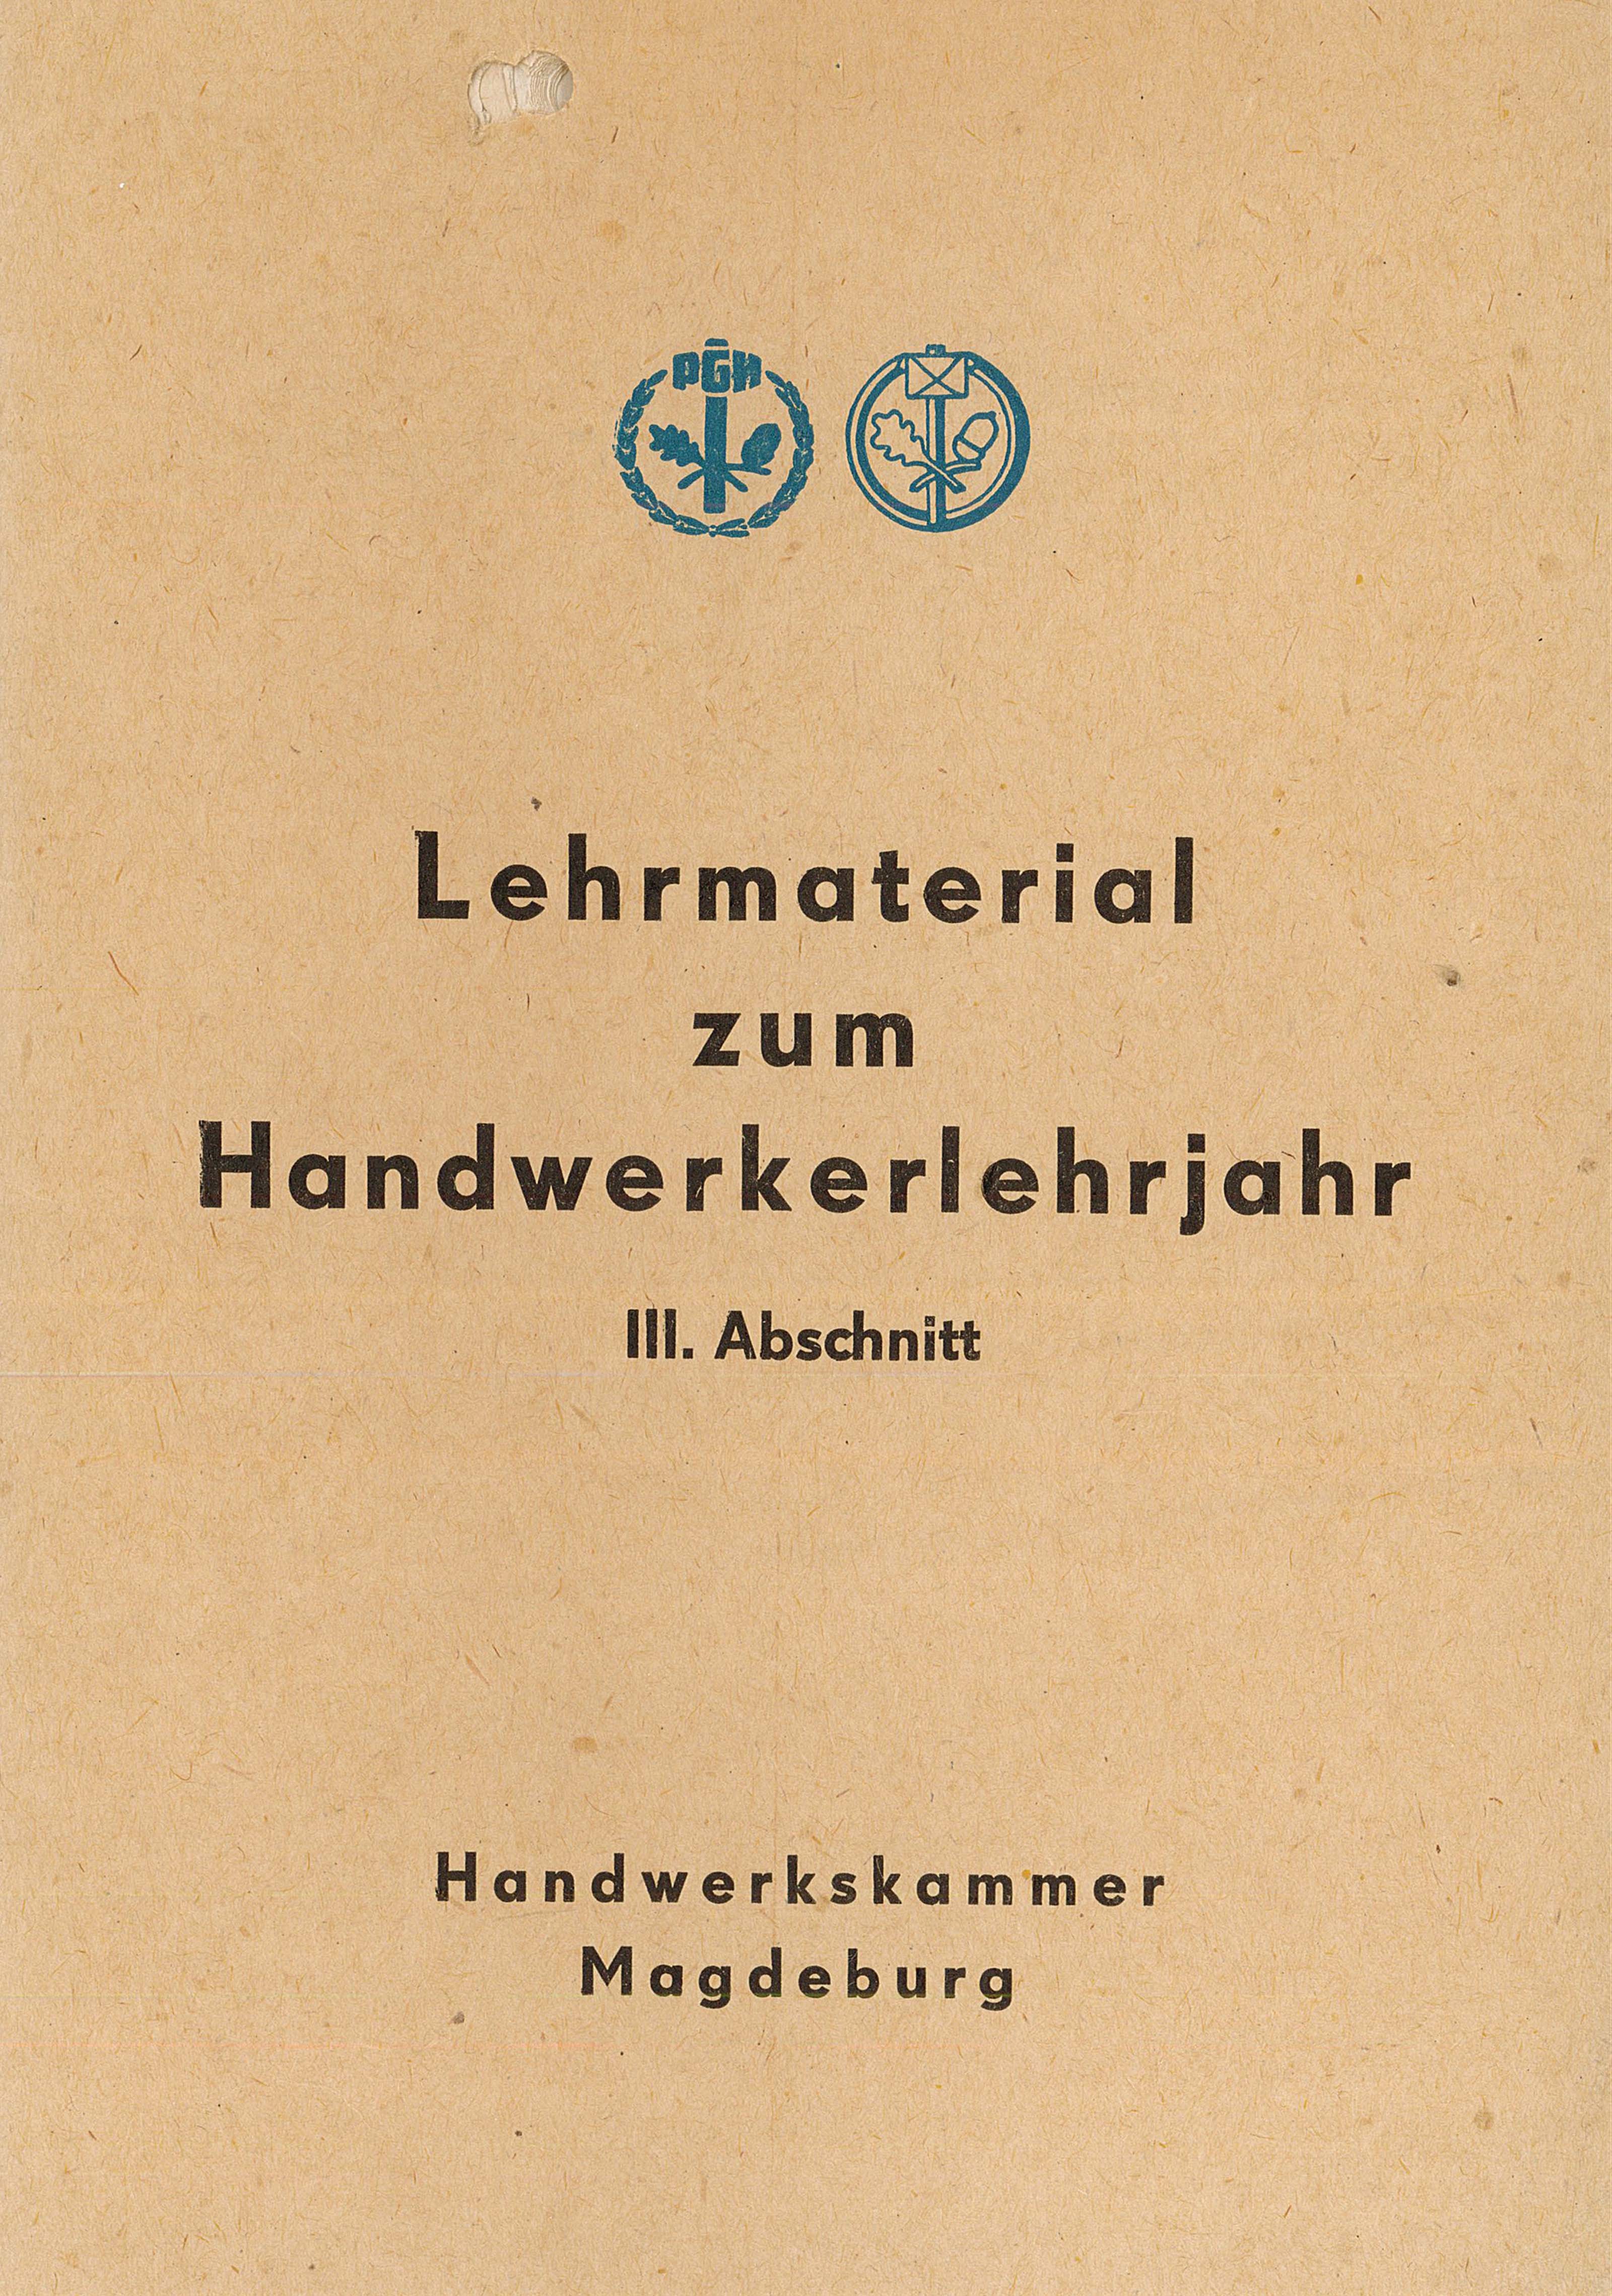 Lehrmaterial zum Handwerkerlehrjahr - III. Abschnitt (Museum Wolmirstedt RR-F)